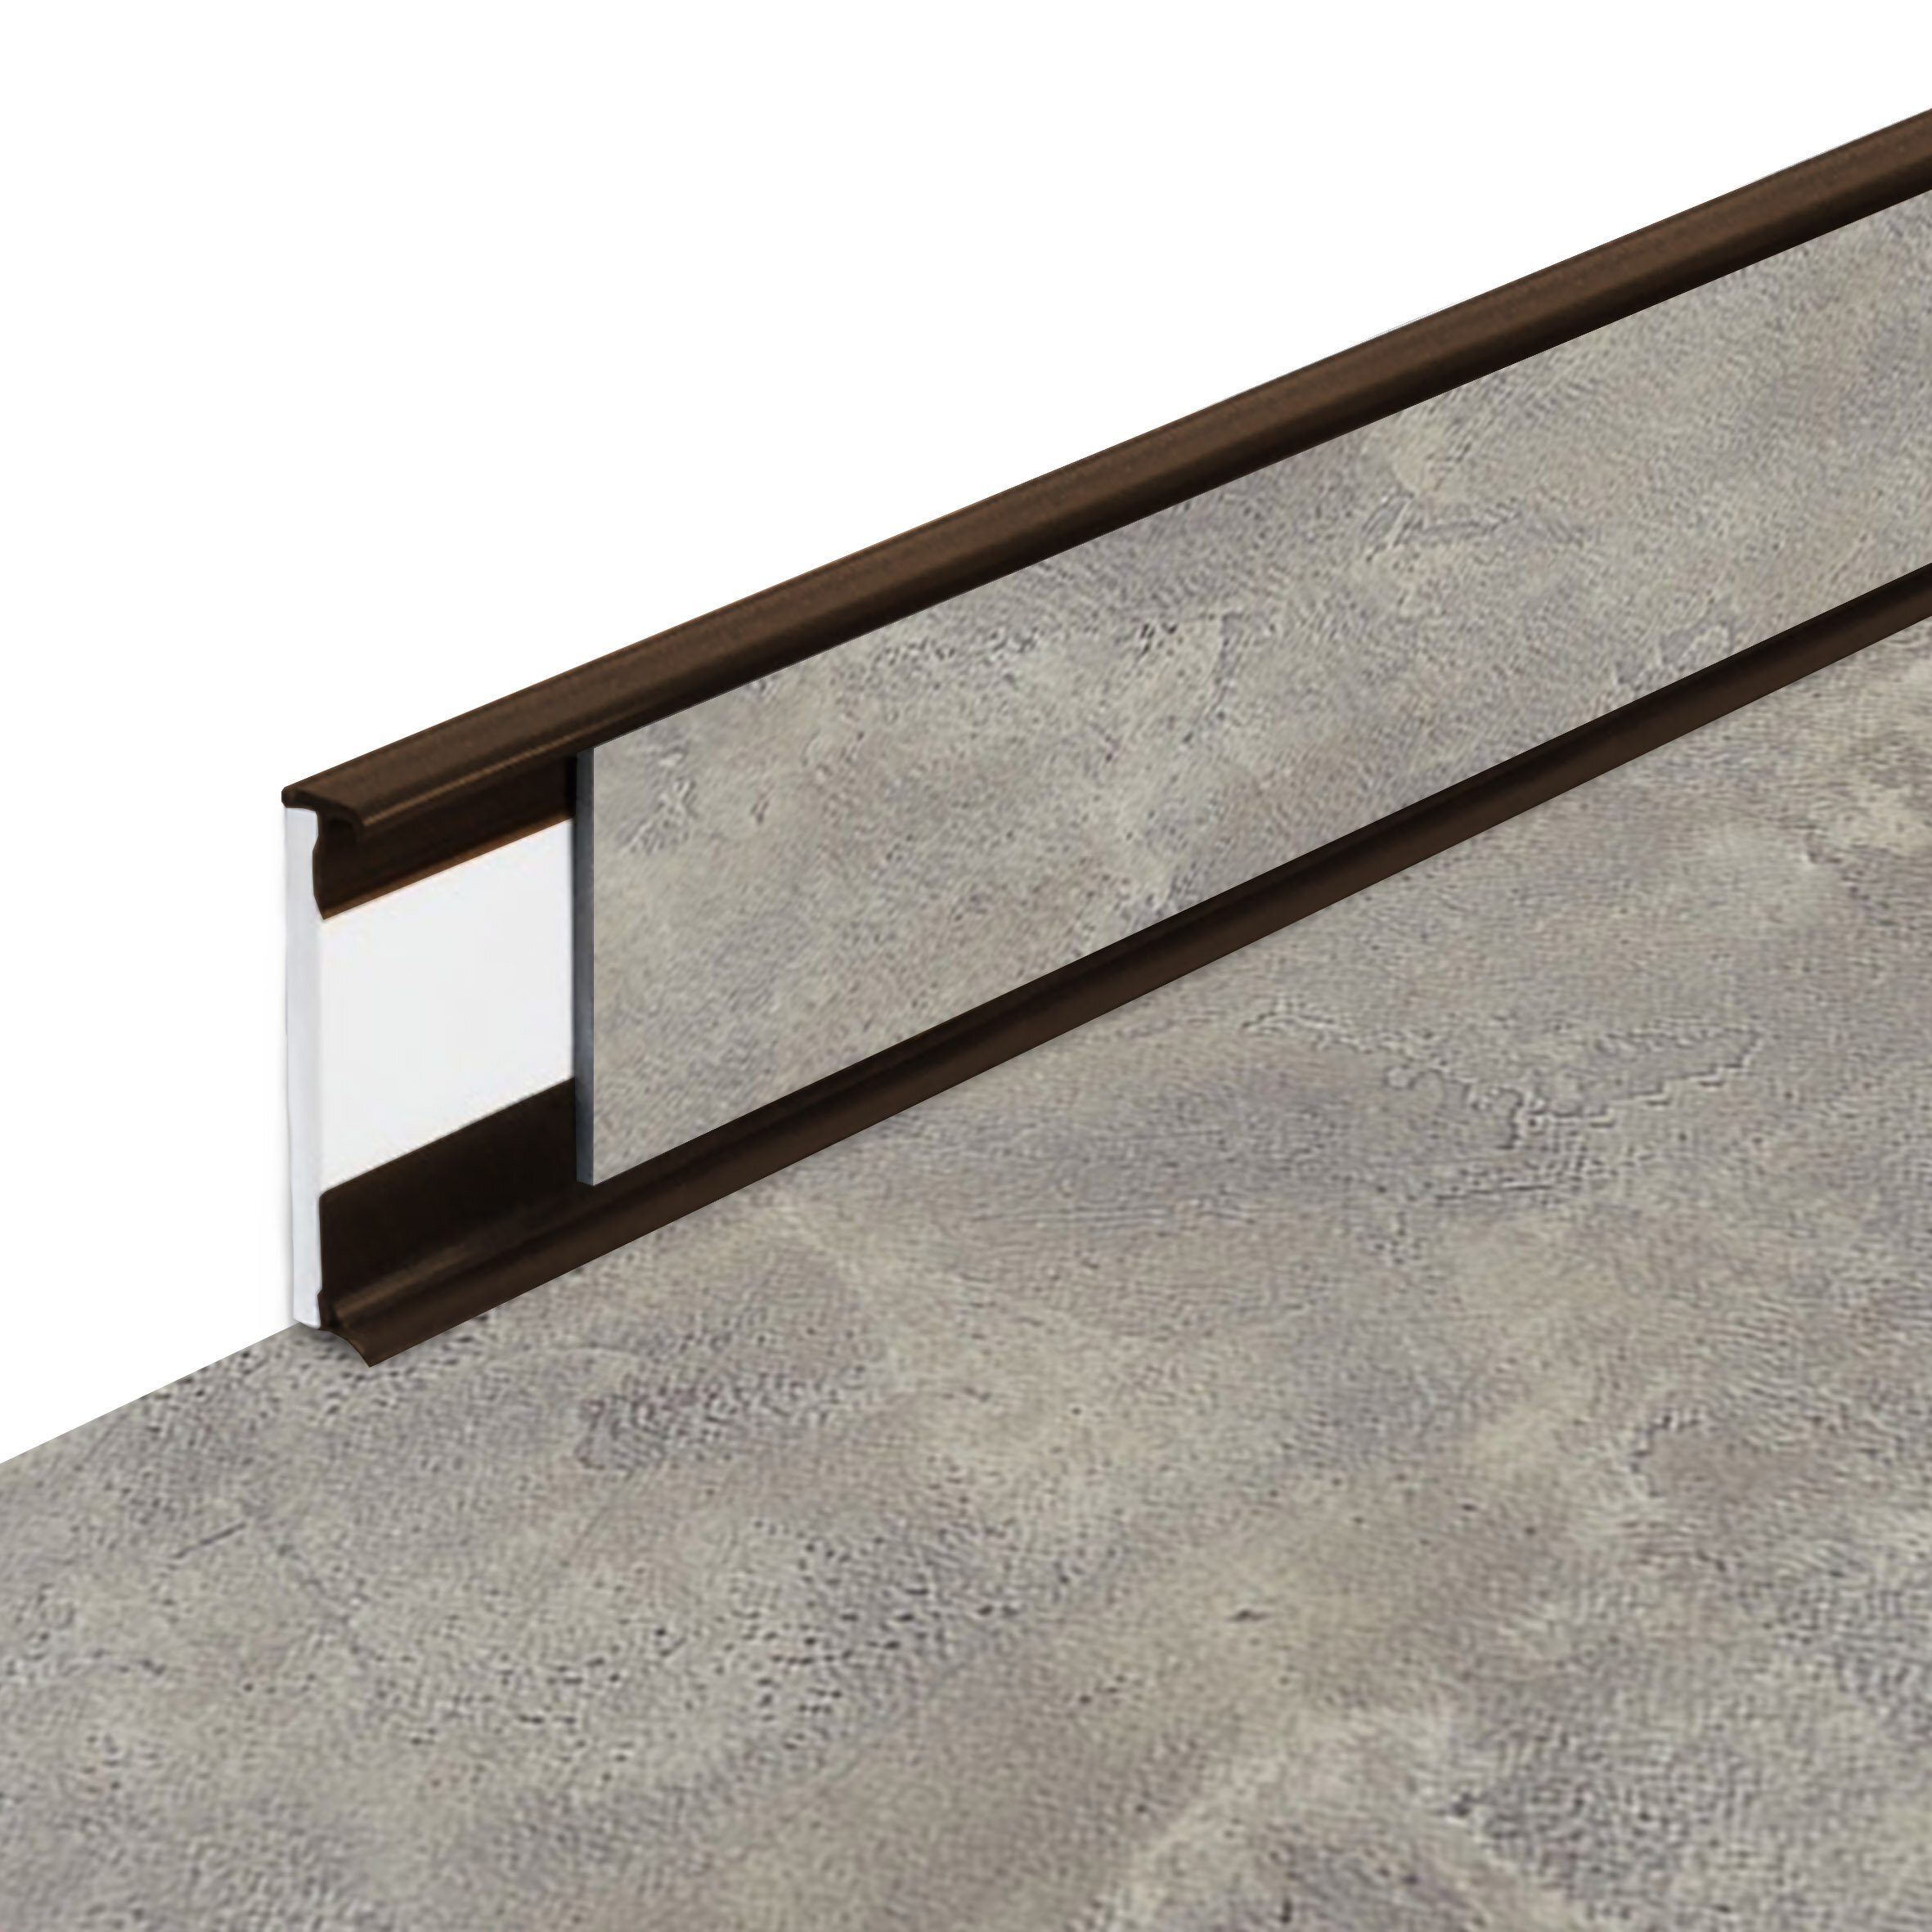 PVC vinylová soklová podlahová lišta Fortelock Business Forsen Grey Clay C022 Brown - dĺžka 200 cm, výška 5,8 cm, hrúbka 1,2 cm